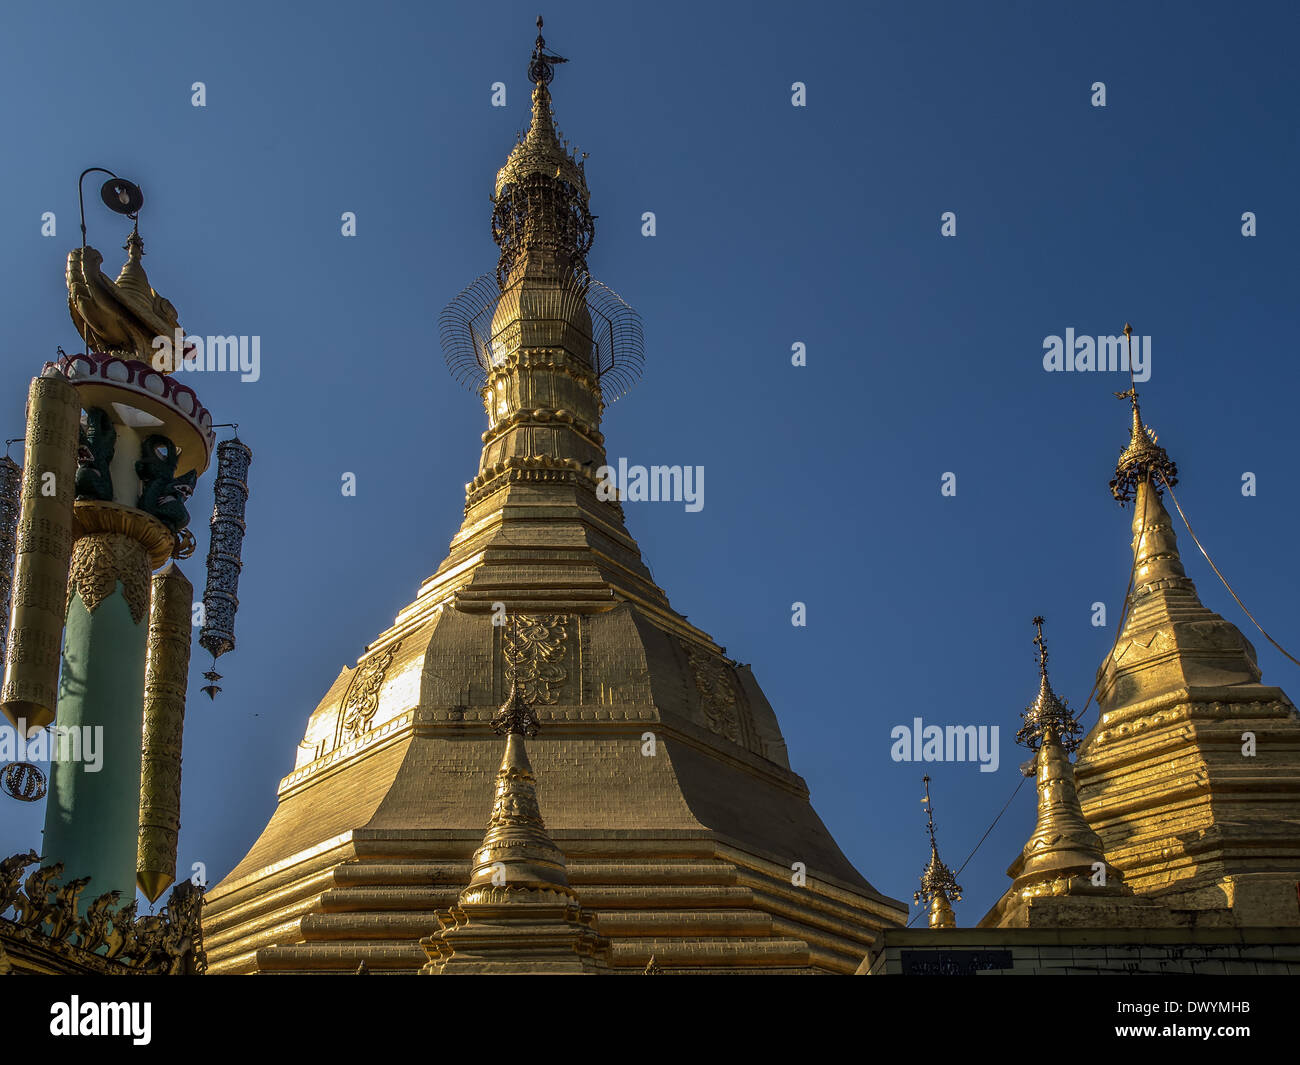 The Sule Pagoda, Rangoon, Yangon, Myanmar, Burma. Stock Photo